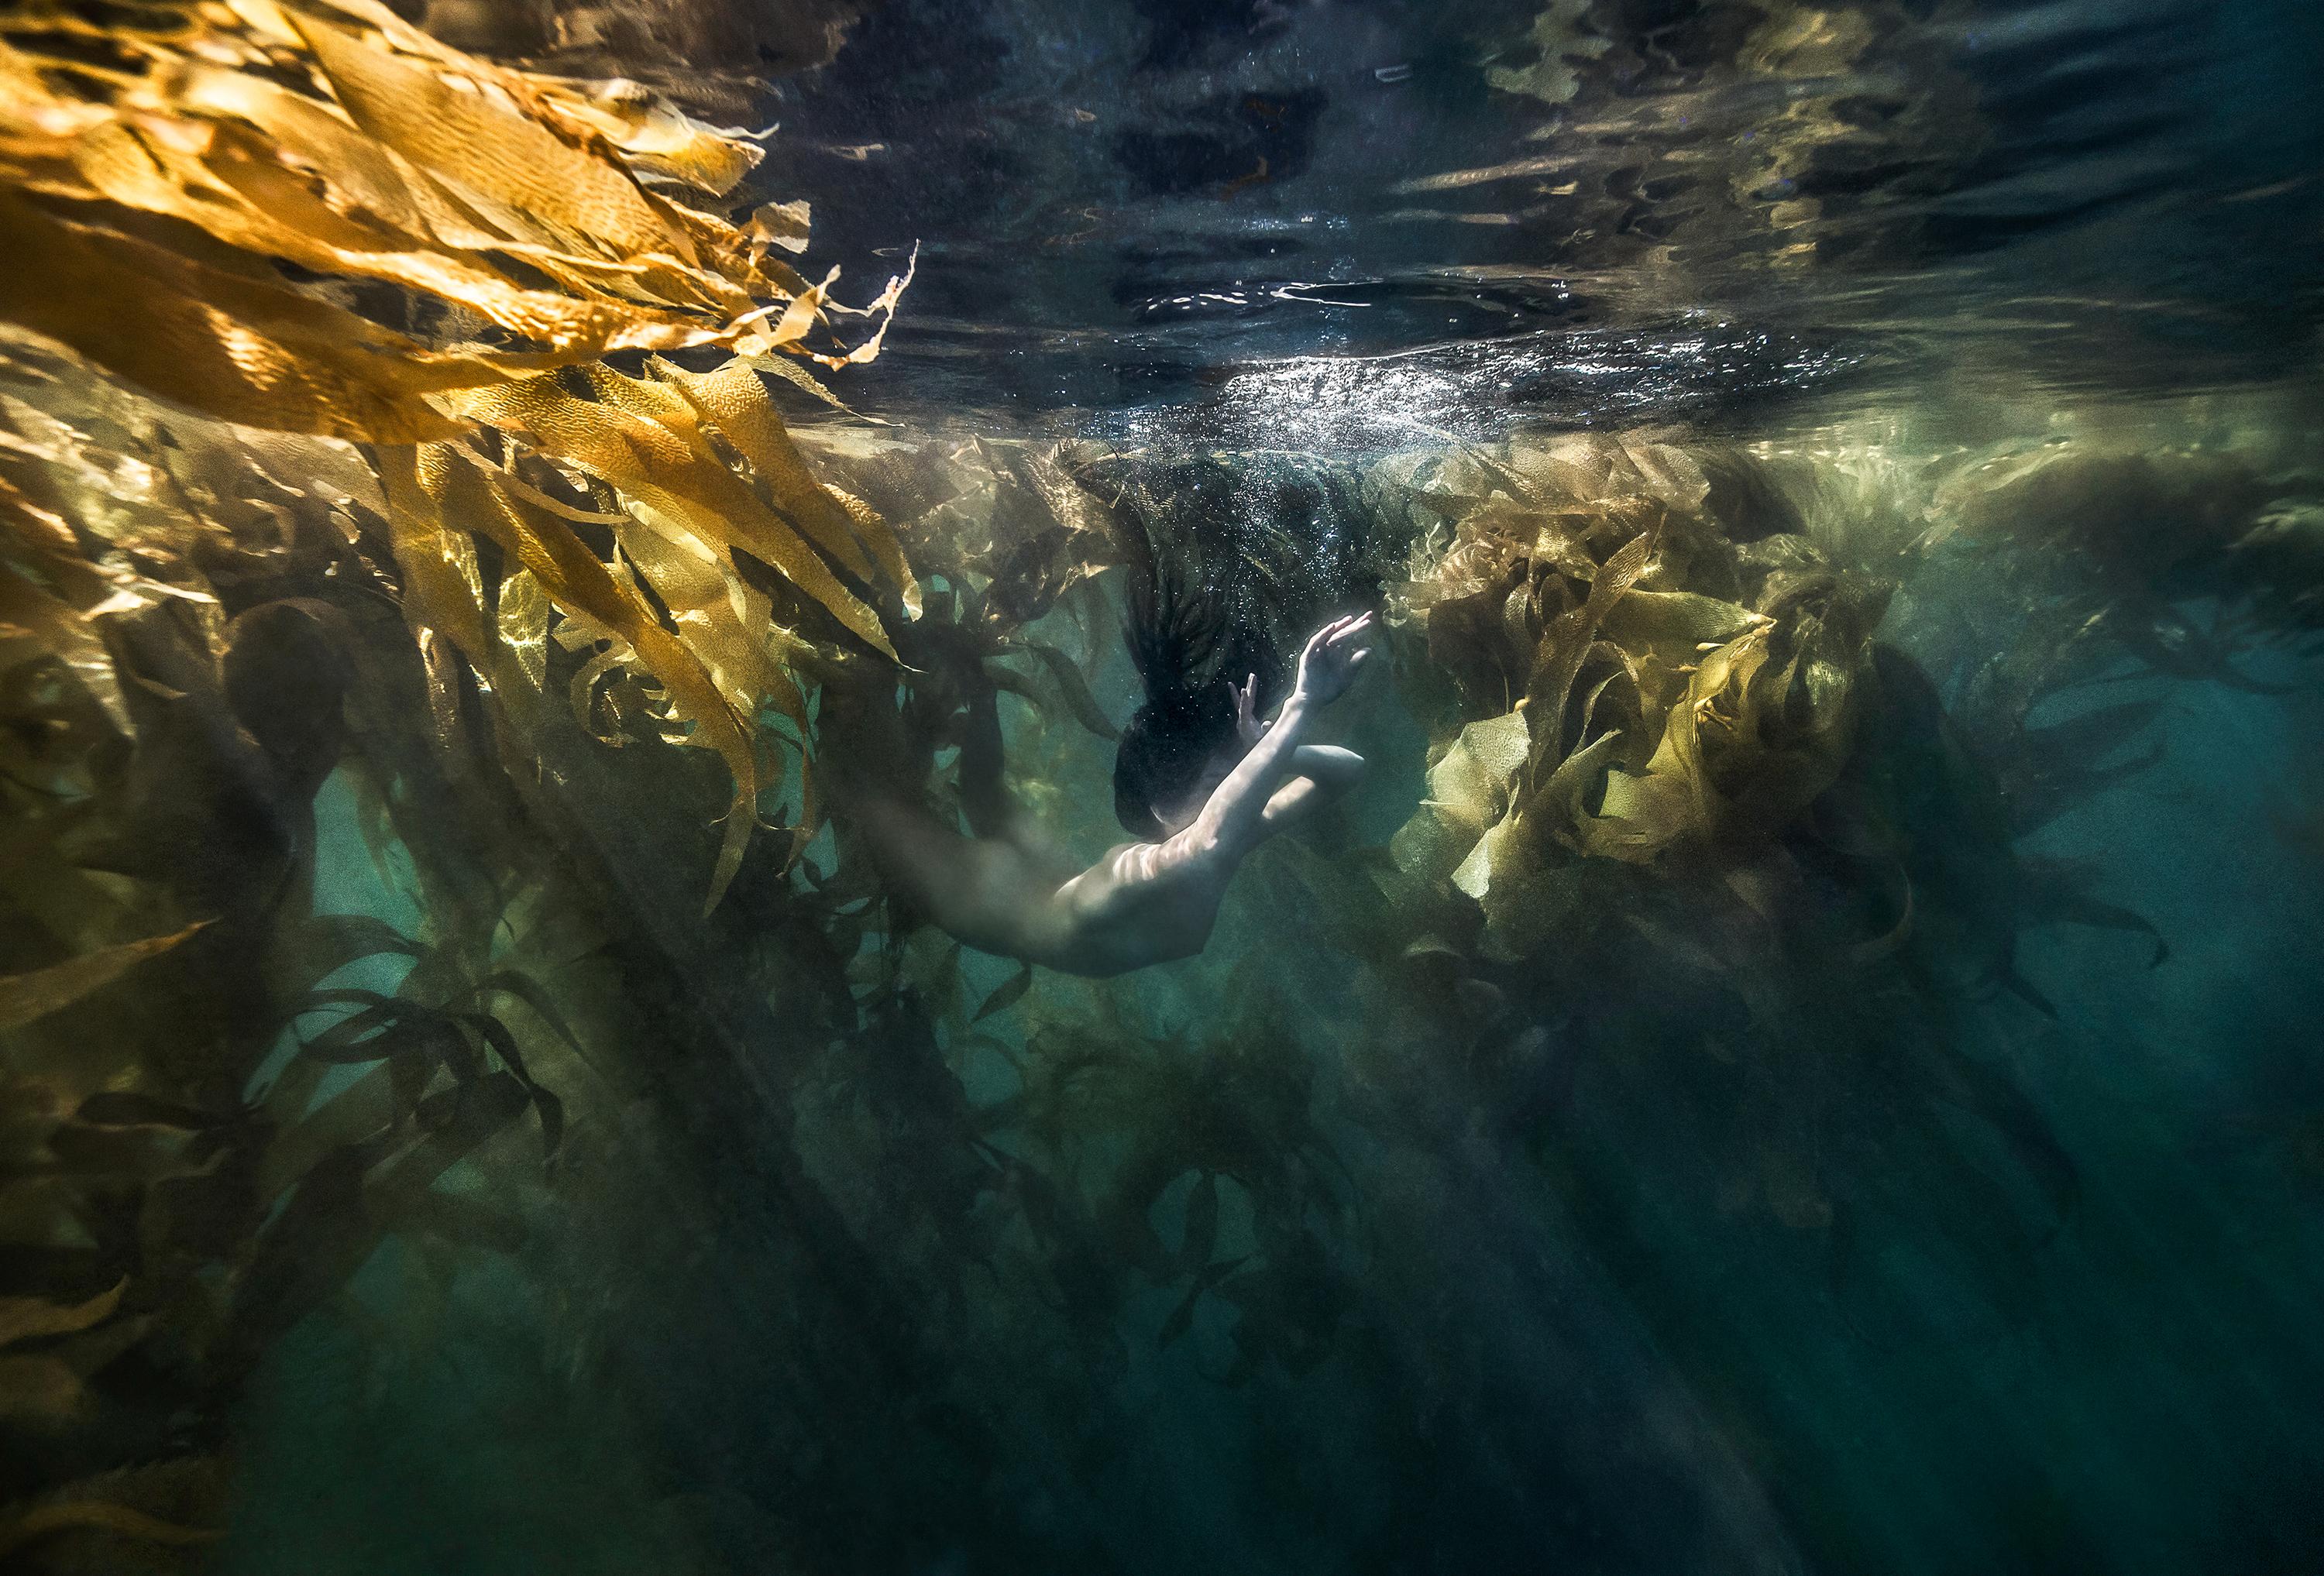 Figurative Photograph Alex Sher - Jungling Mermaid - photographie nue sous-marine - pigment d'archives 16x24".